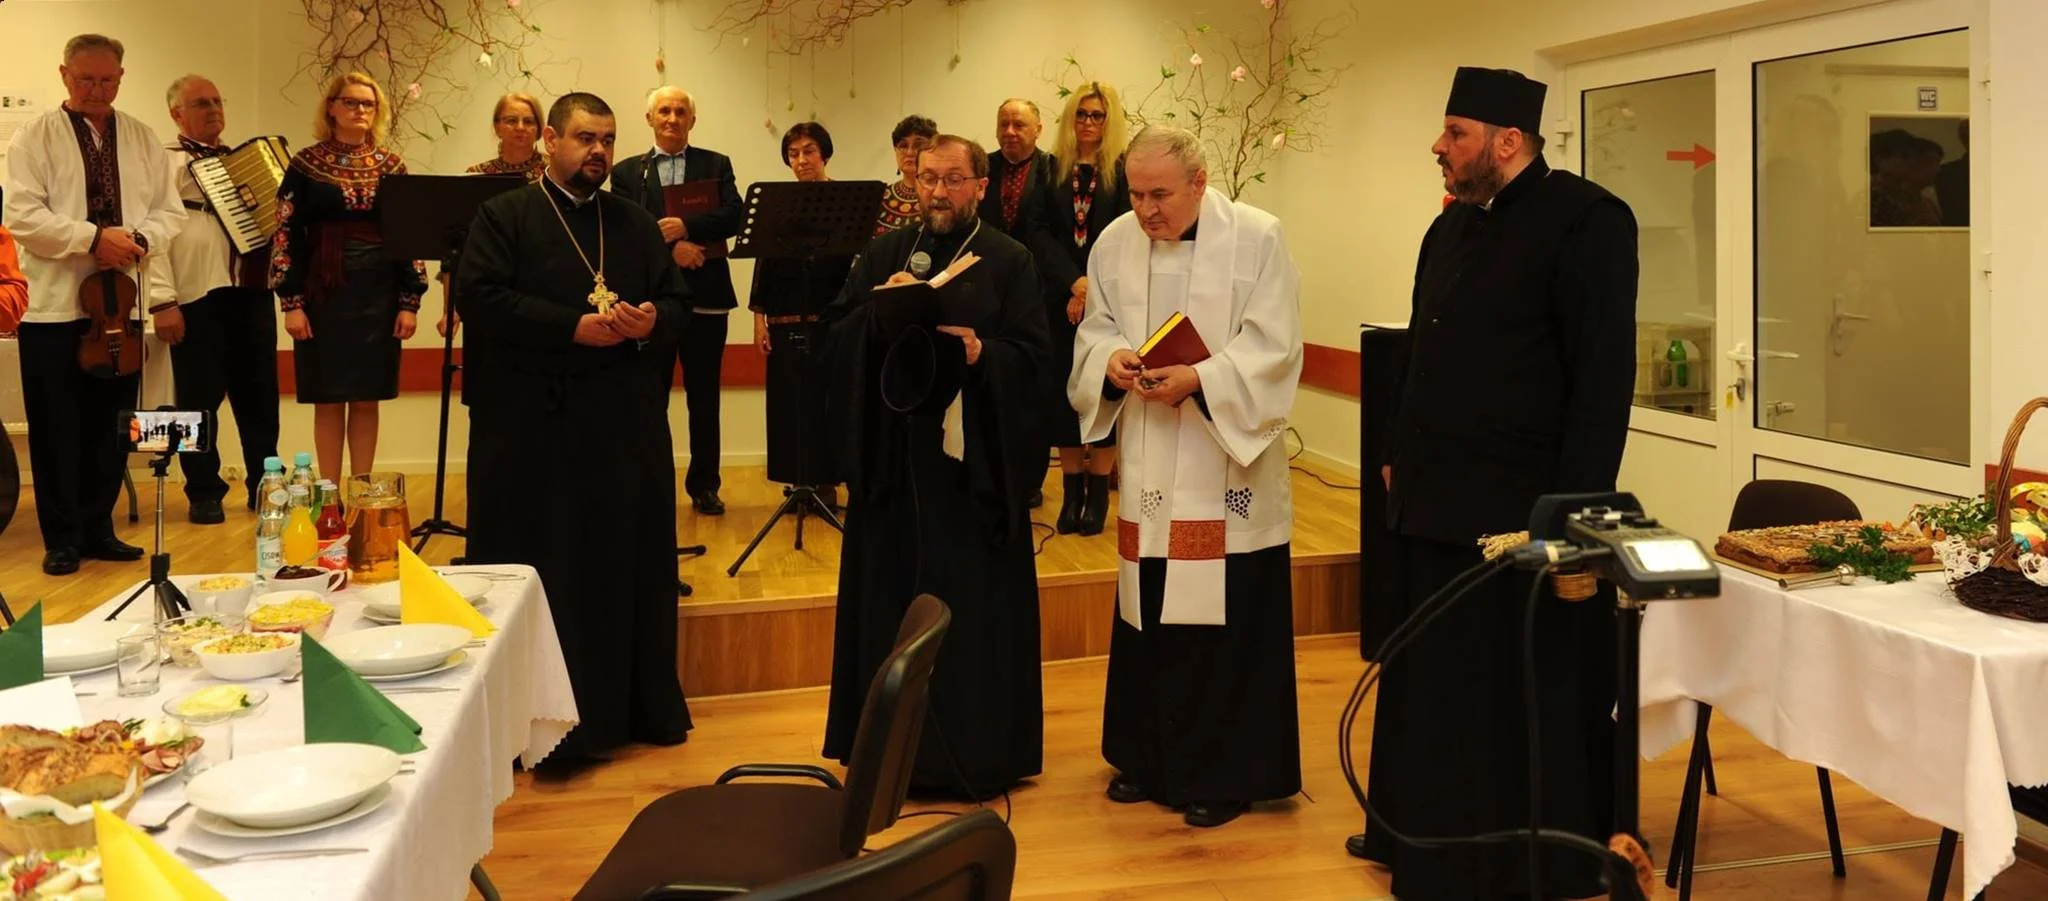 Wielkanocne Ekumeniczne Spotkanie w Szczawnem. Nie zabrakło muzyki, życzeń i wystaw [ZDJĘCIA] - Zdjęcie główne